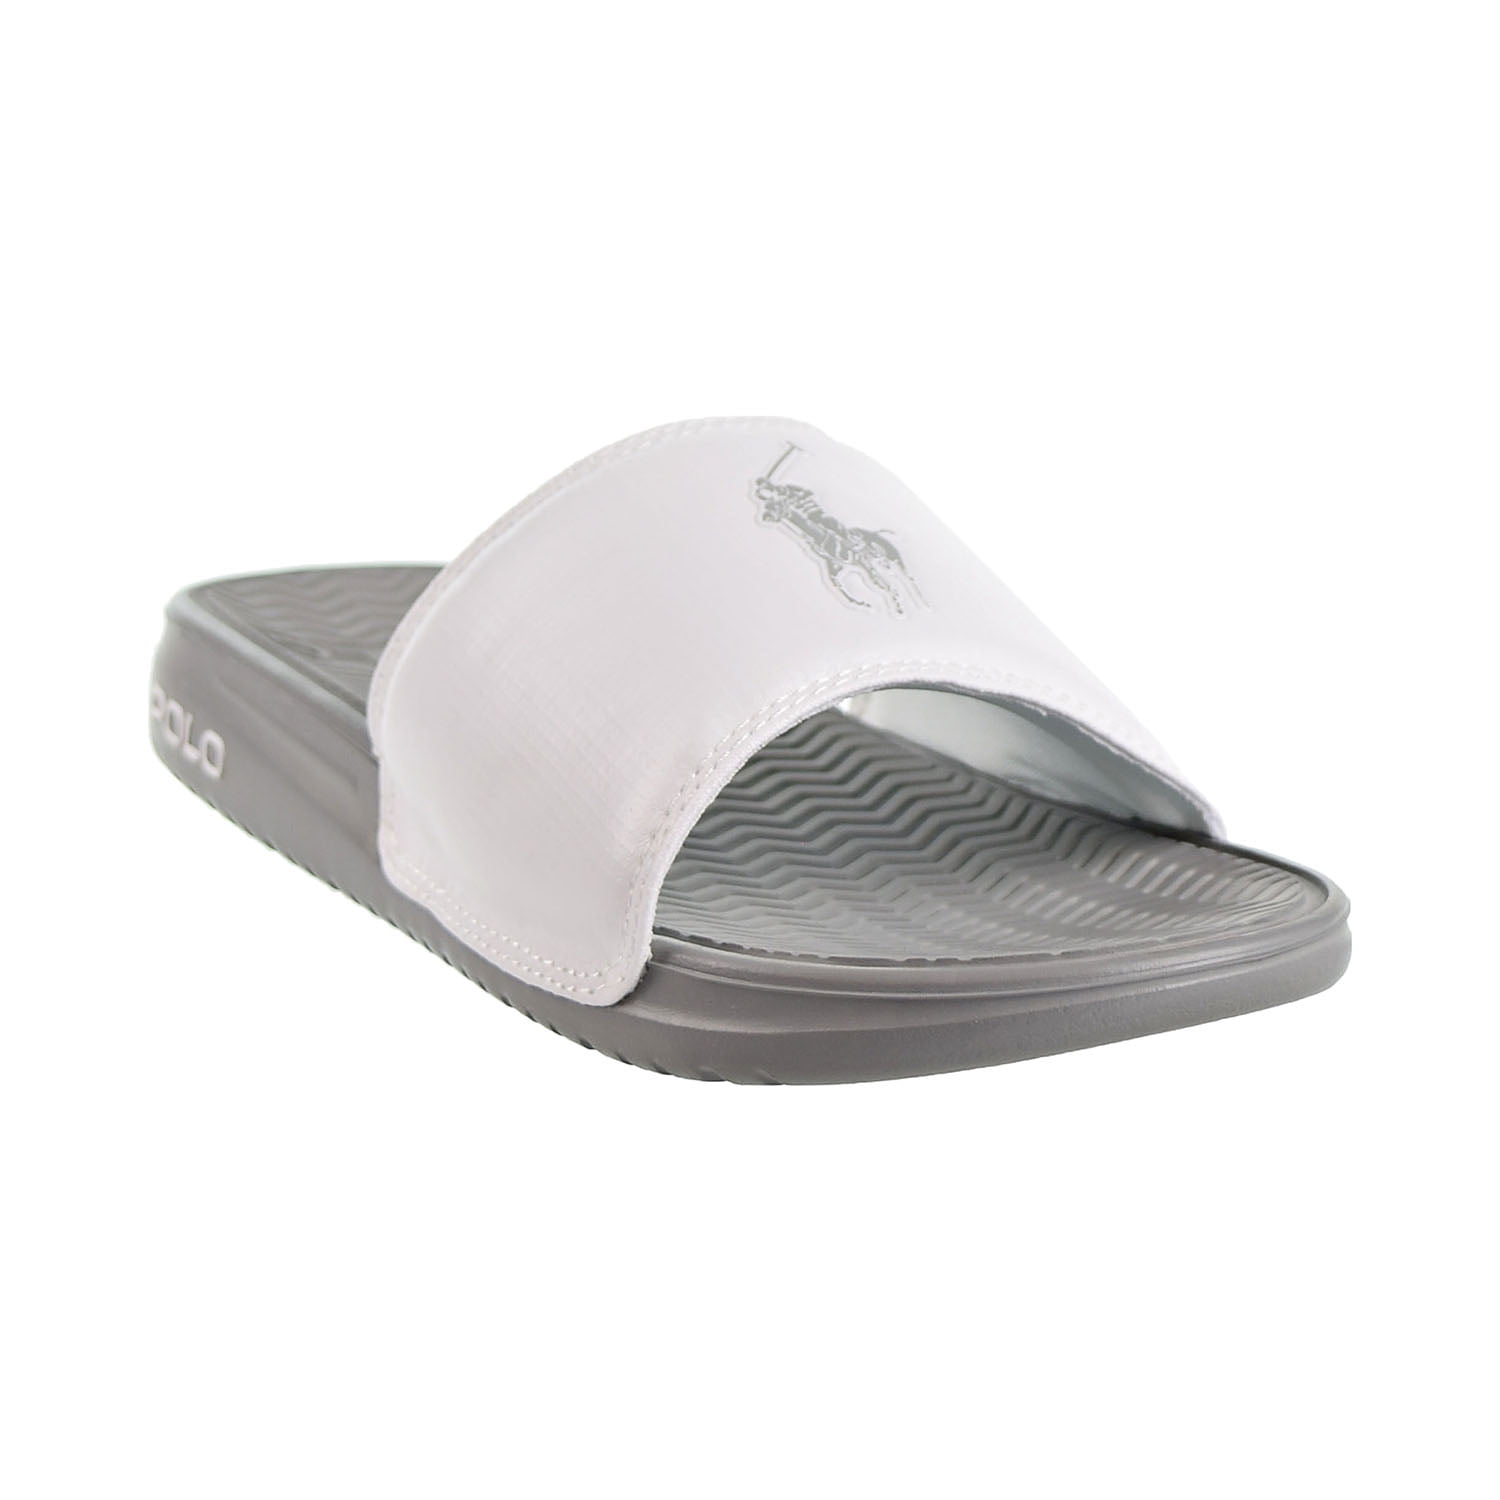 polo ralph lauren navy rodwell sandals